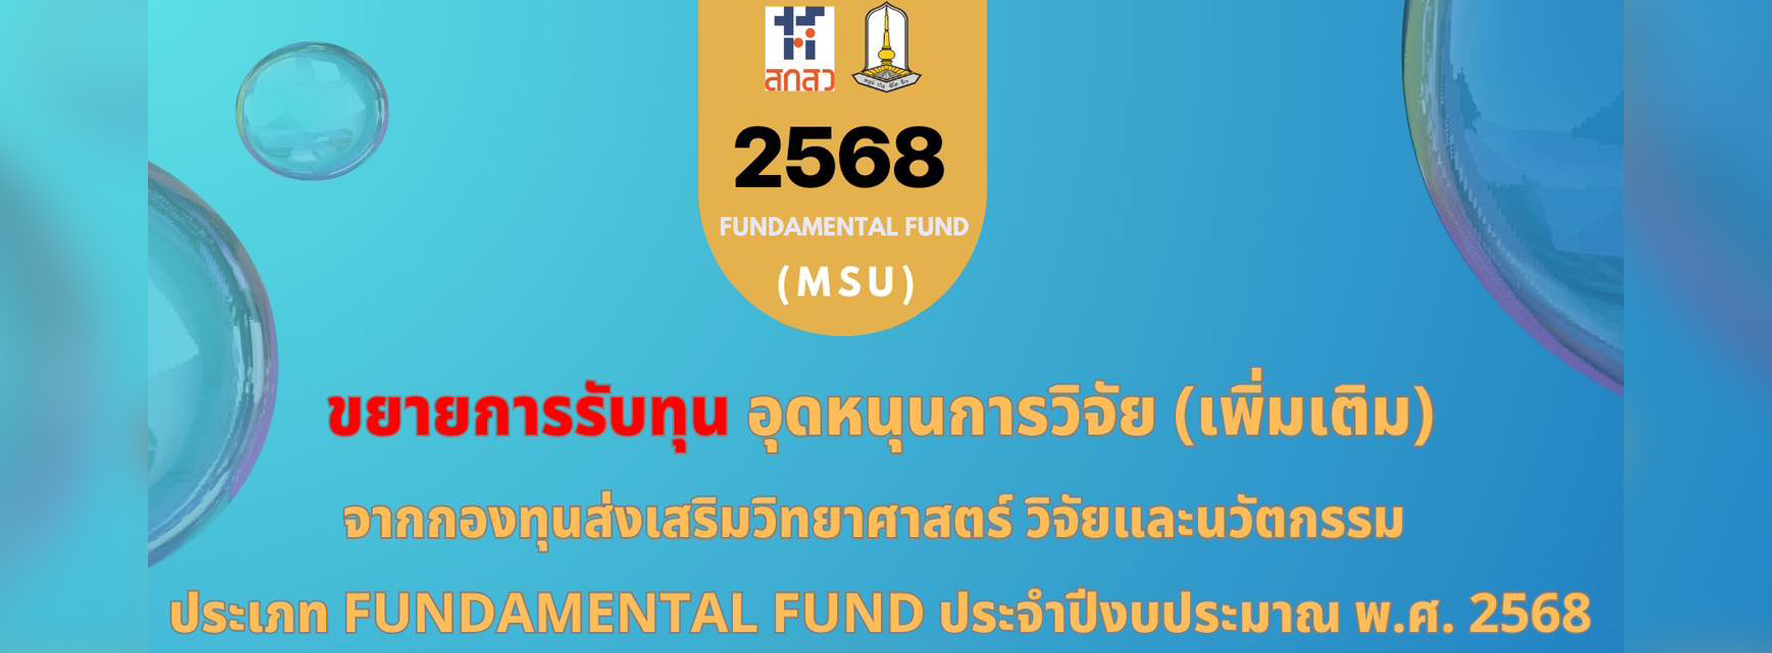 ประชาสัมพันธ์ ขยายระยะเวลารับทุนอุดหนุน Fundamental Fund (เพิ่มเติม)